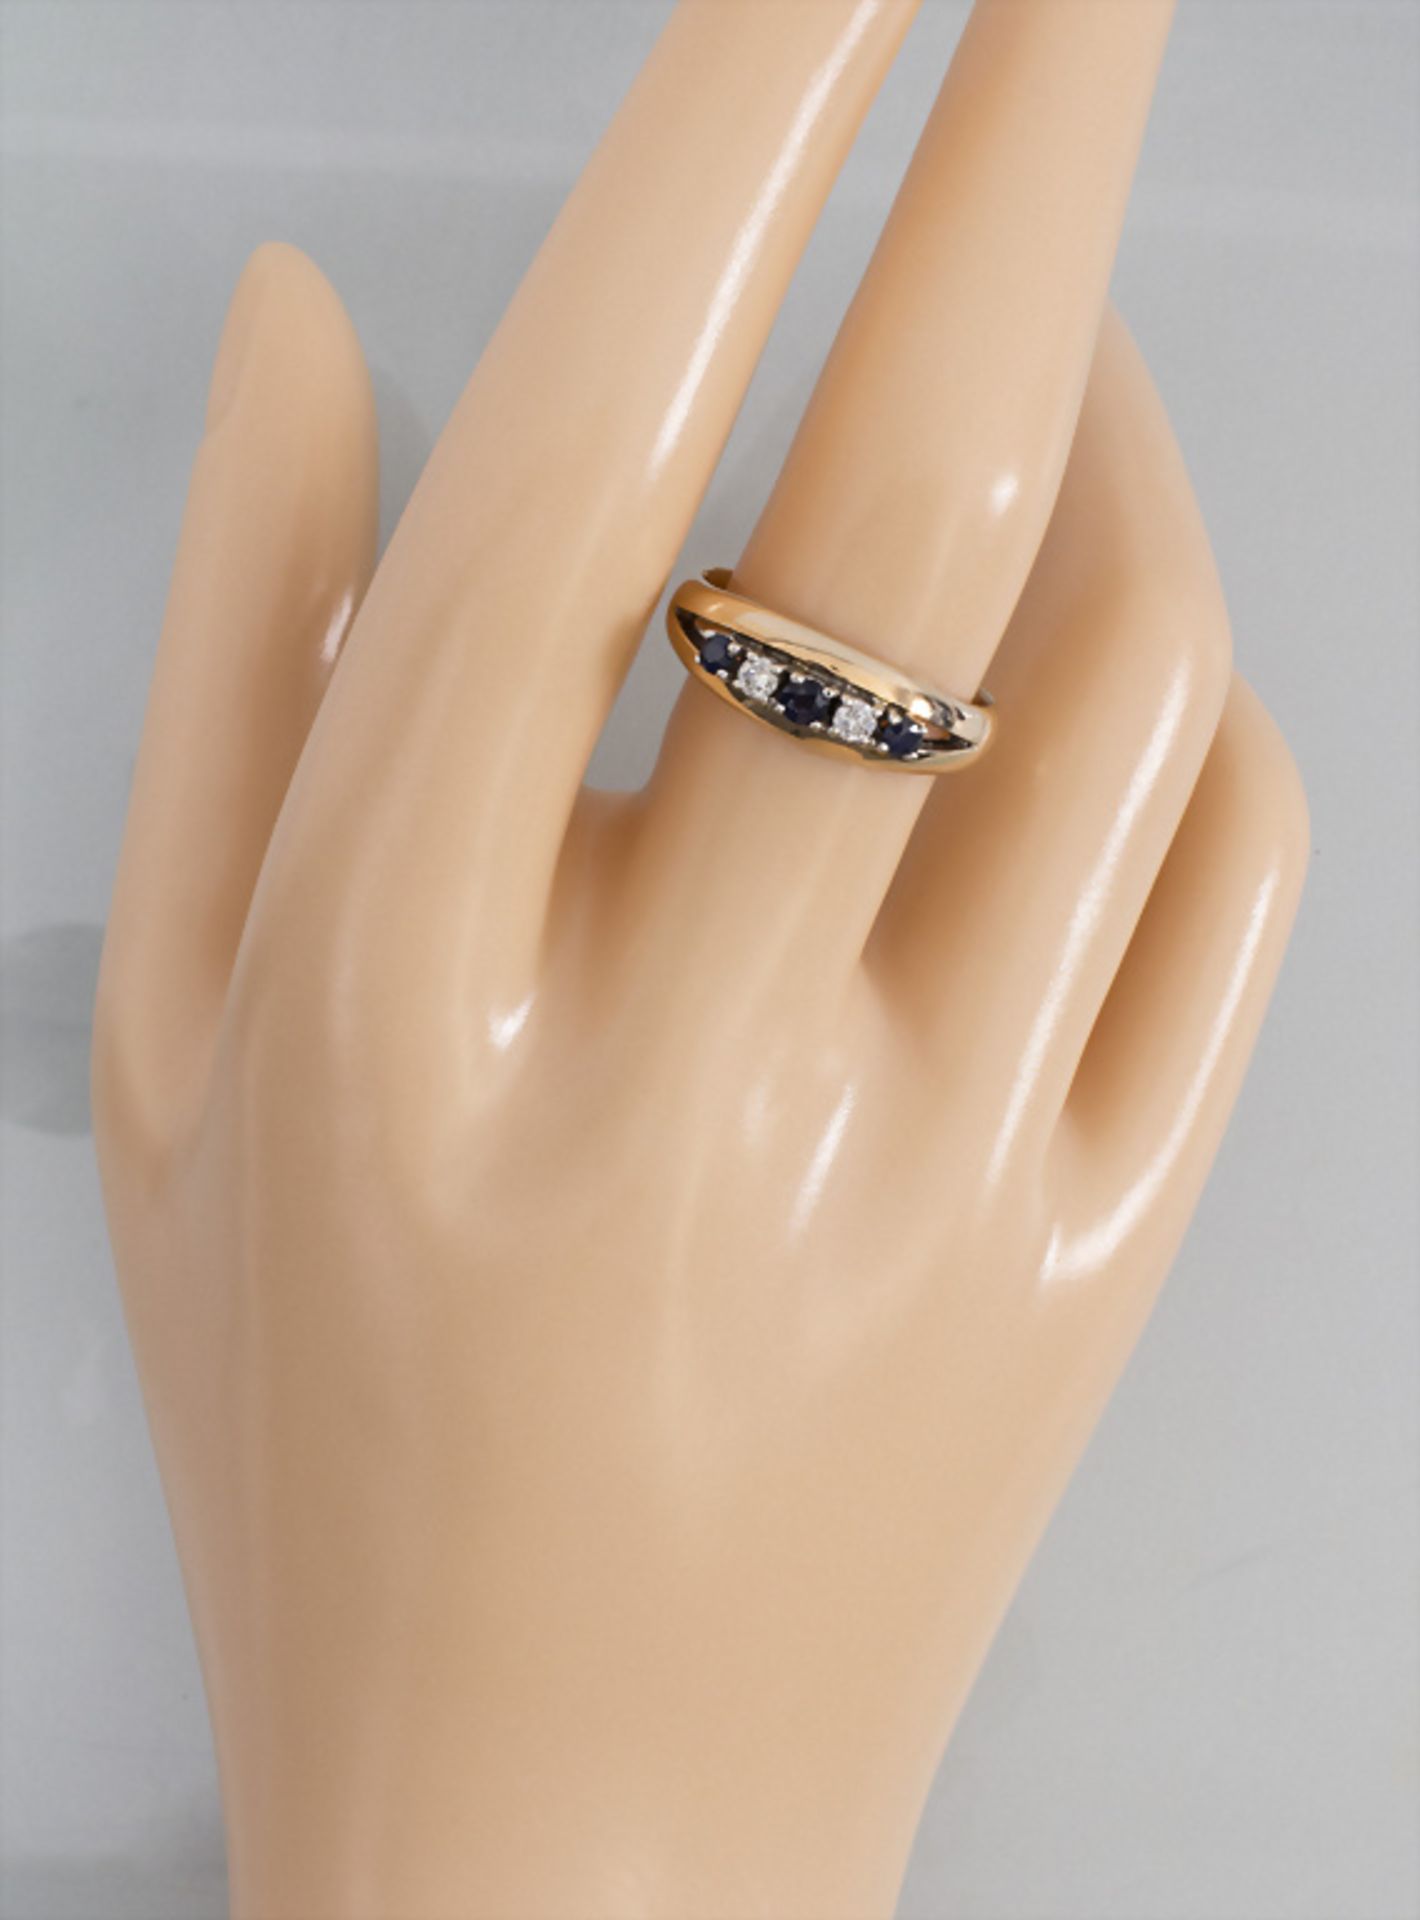 Damenring mit Diamant und Saphir / A ladies 14k gold ring with diamonds and sapphires - Bild 4 aus 4